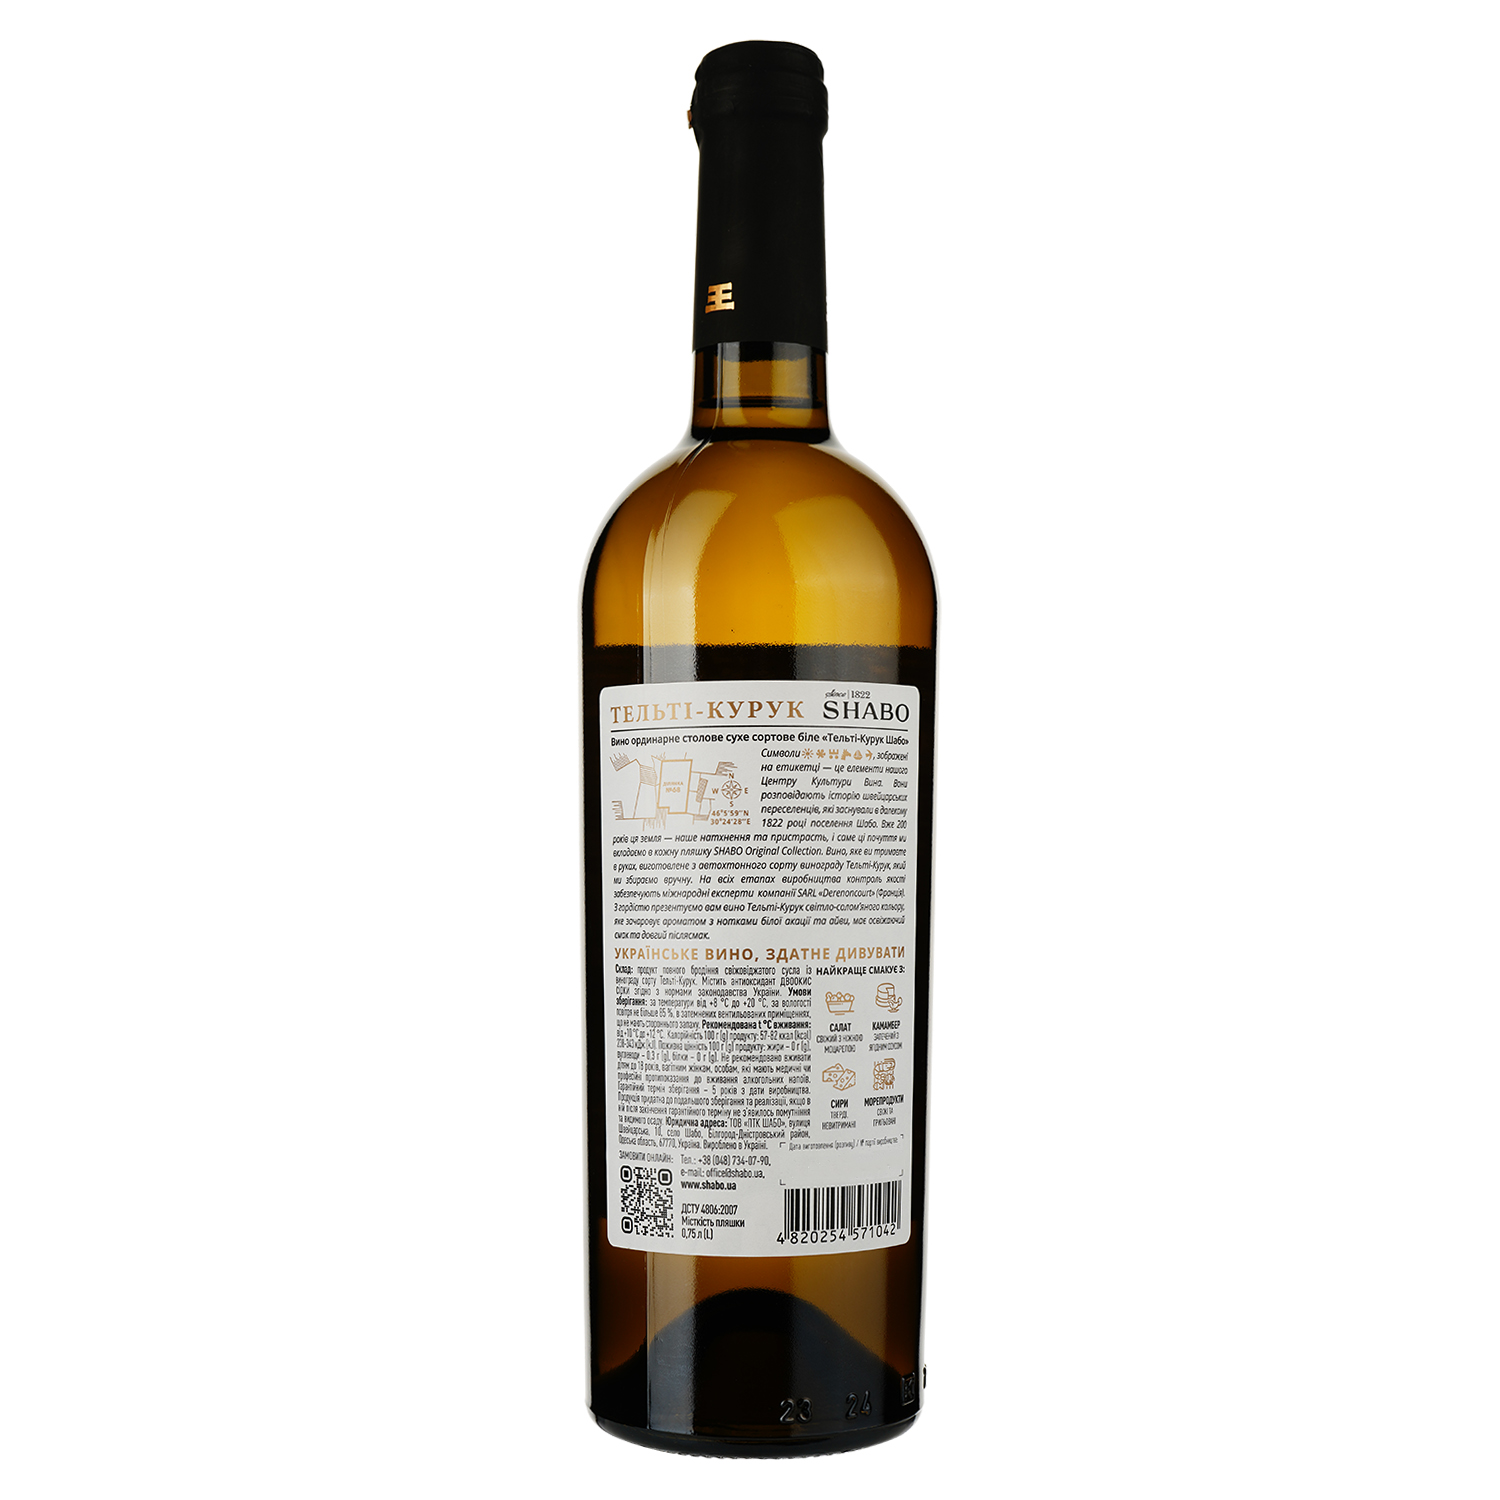 Вино Shabo Original Collection Тельти-Курук, белое, сухое, 11,6%, 0,75 л - фото 2